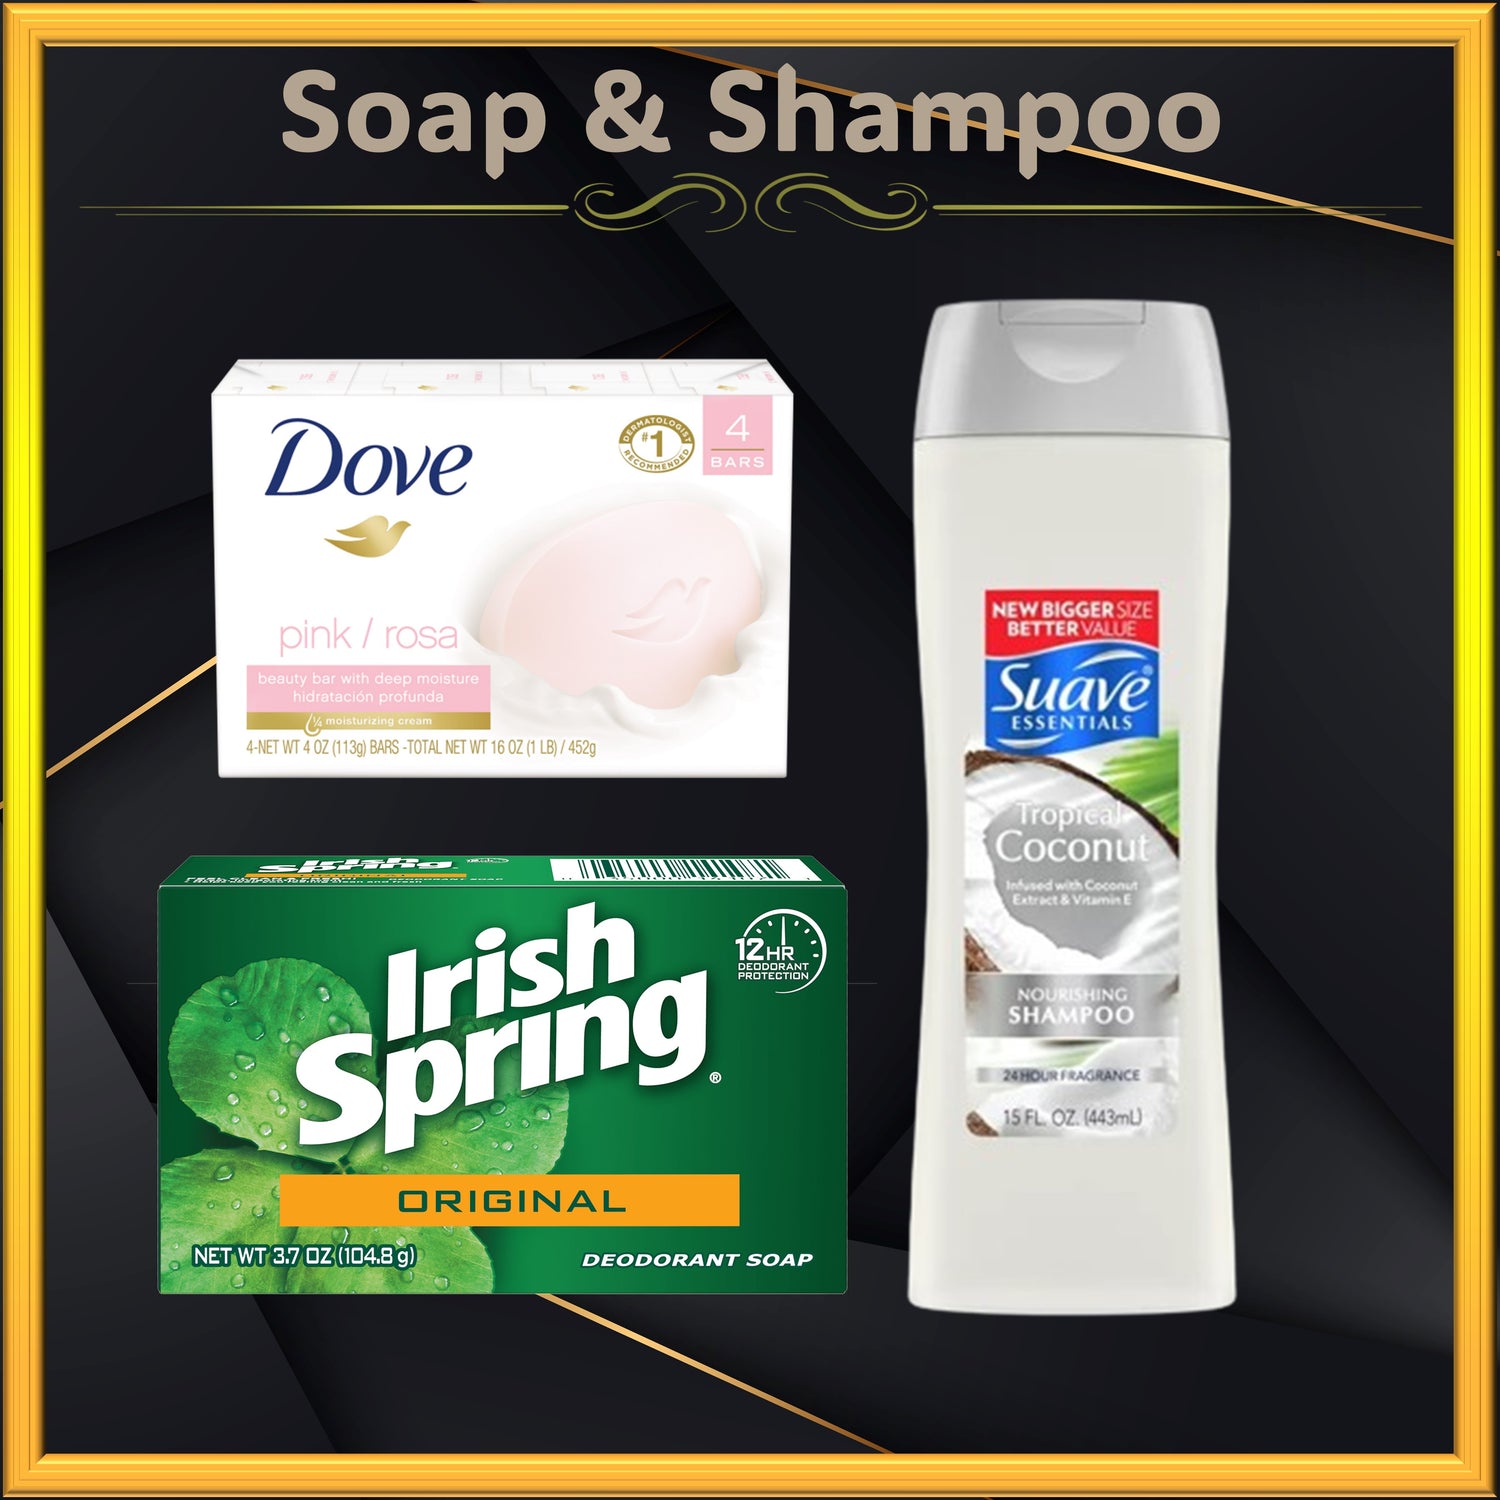 Soap & Shampoo